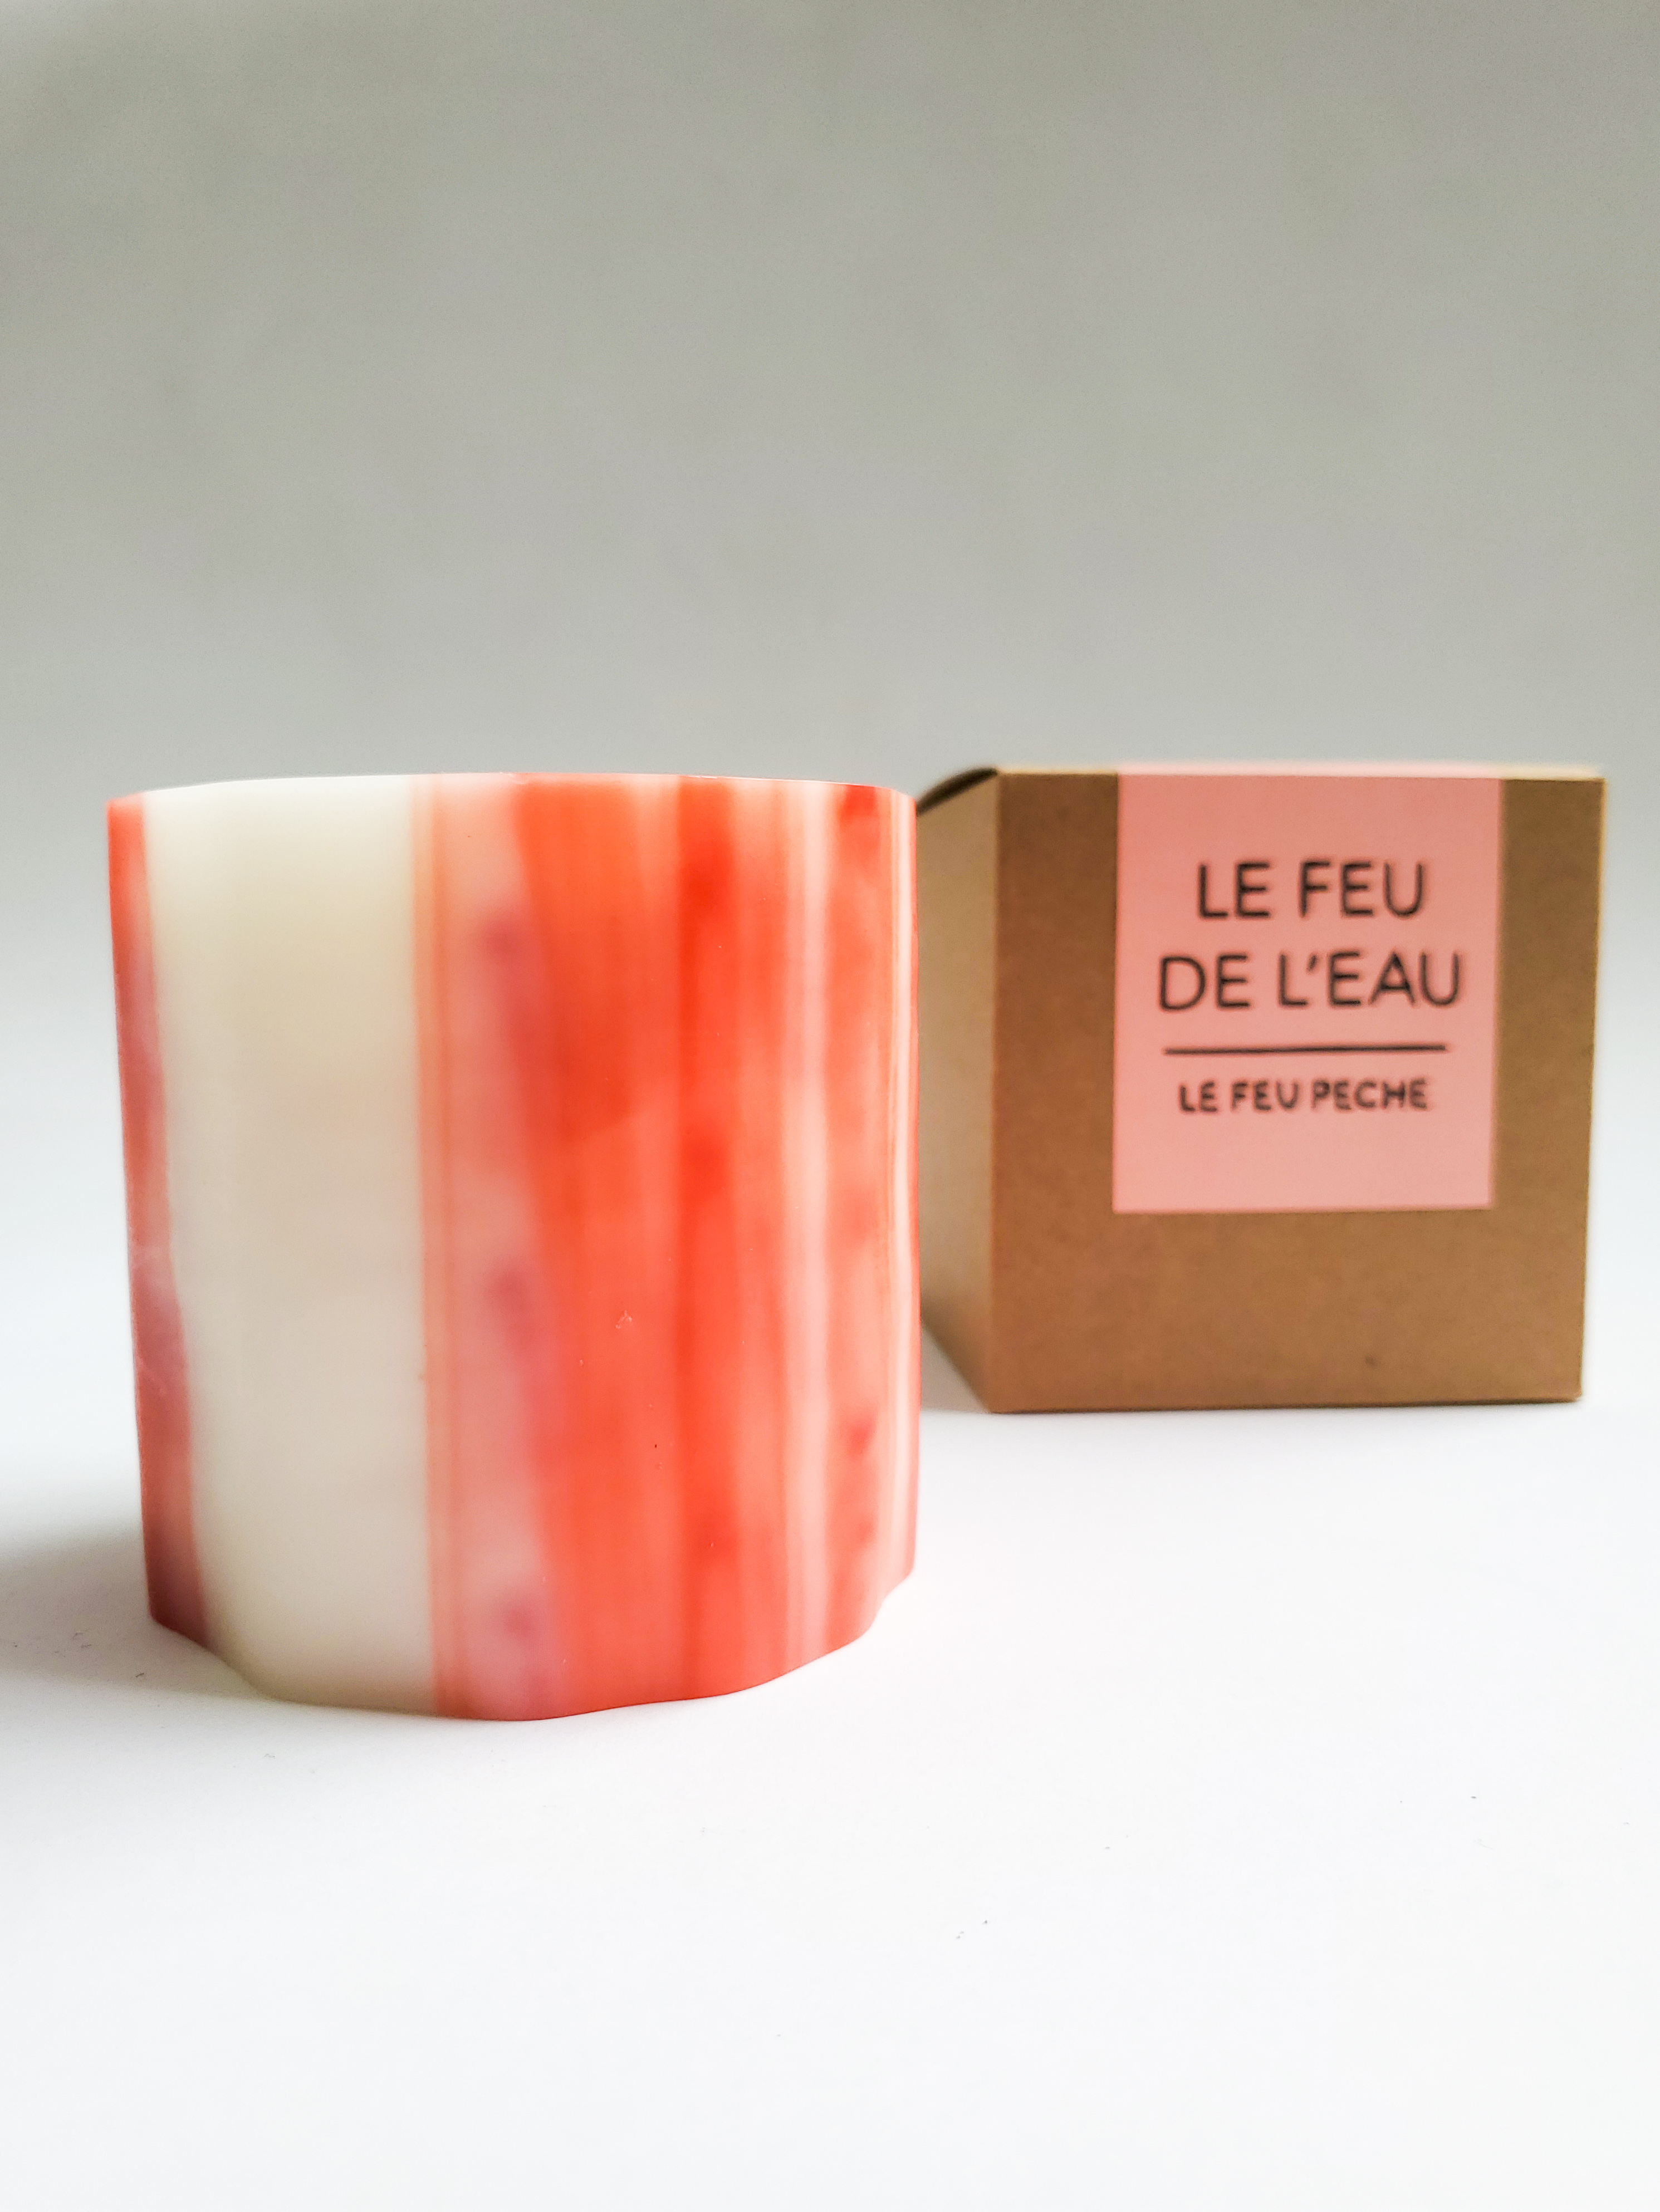 A pink candle sits next to a cardboard box that has the text "Le Feu de L'eau - Le Feu Peche" on it. 